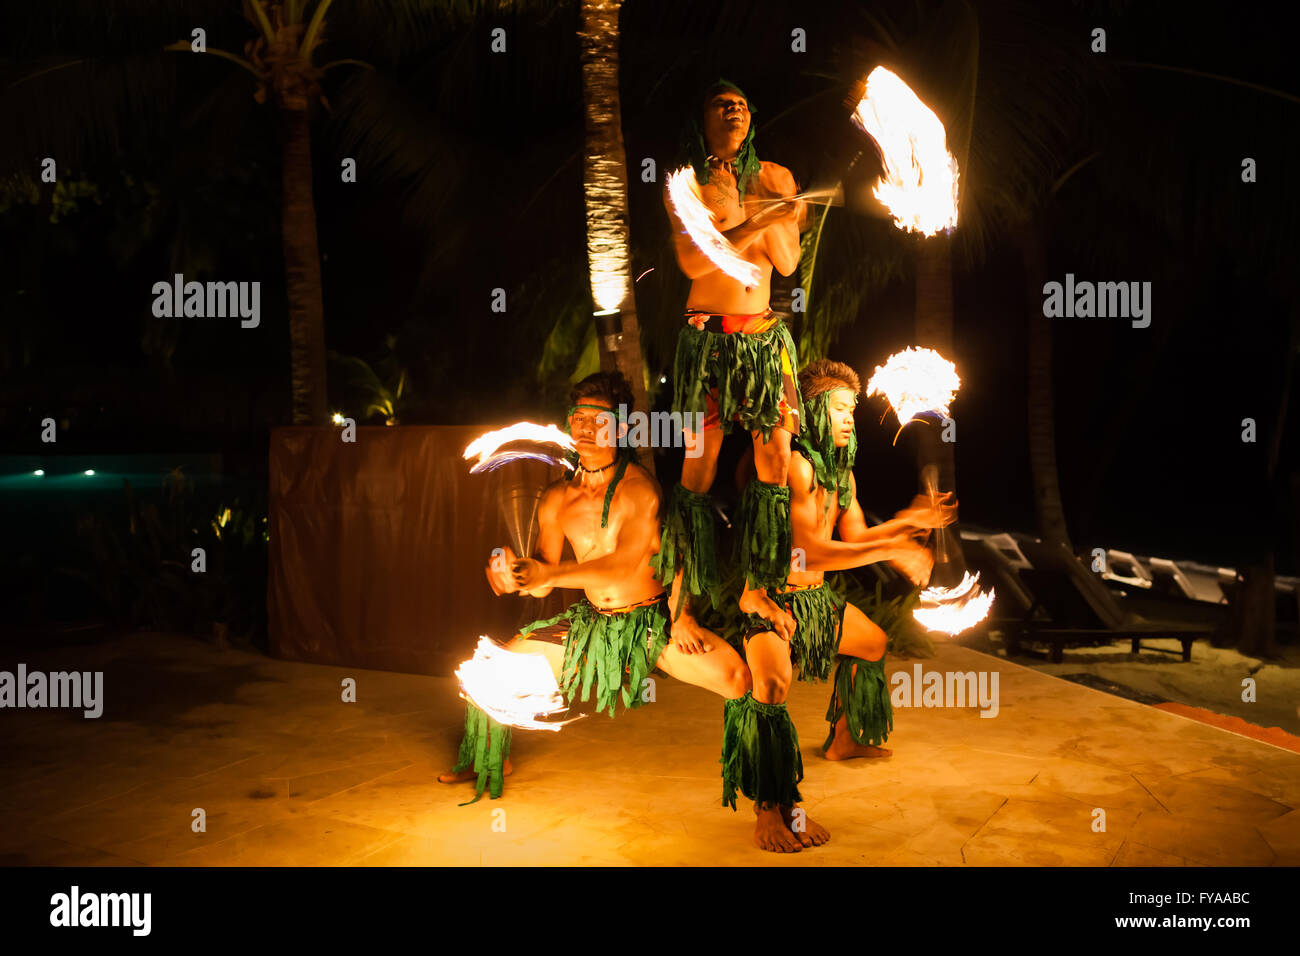 Koh Samui, Thaïlande - 24 août 2013 : trois hommes forts traditionnels de la scène danse du feu au tropical resort sur l'île de Koh Samui Banque D'Images